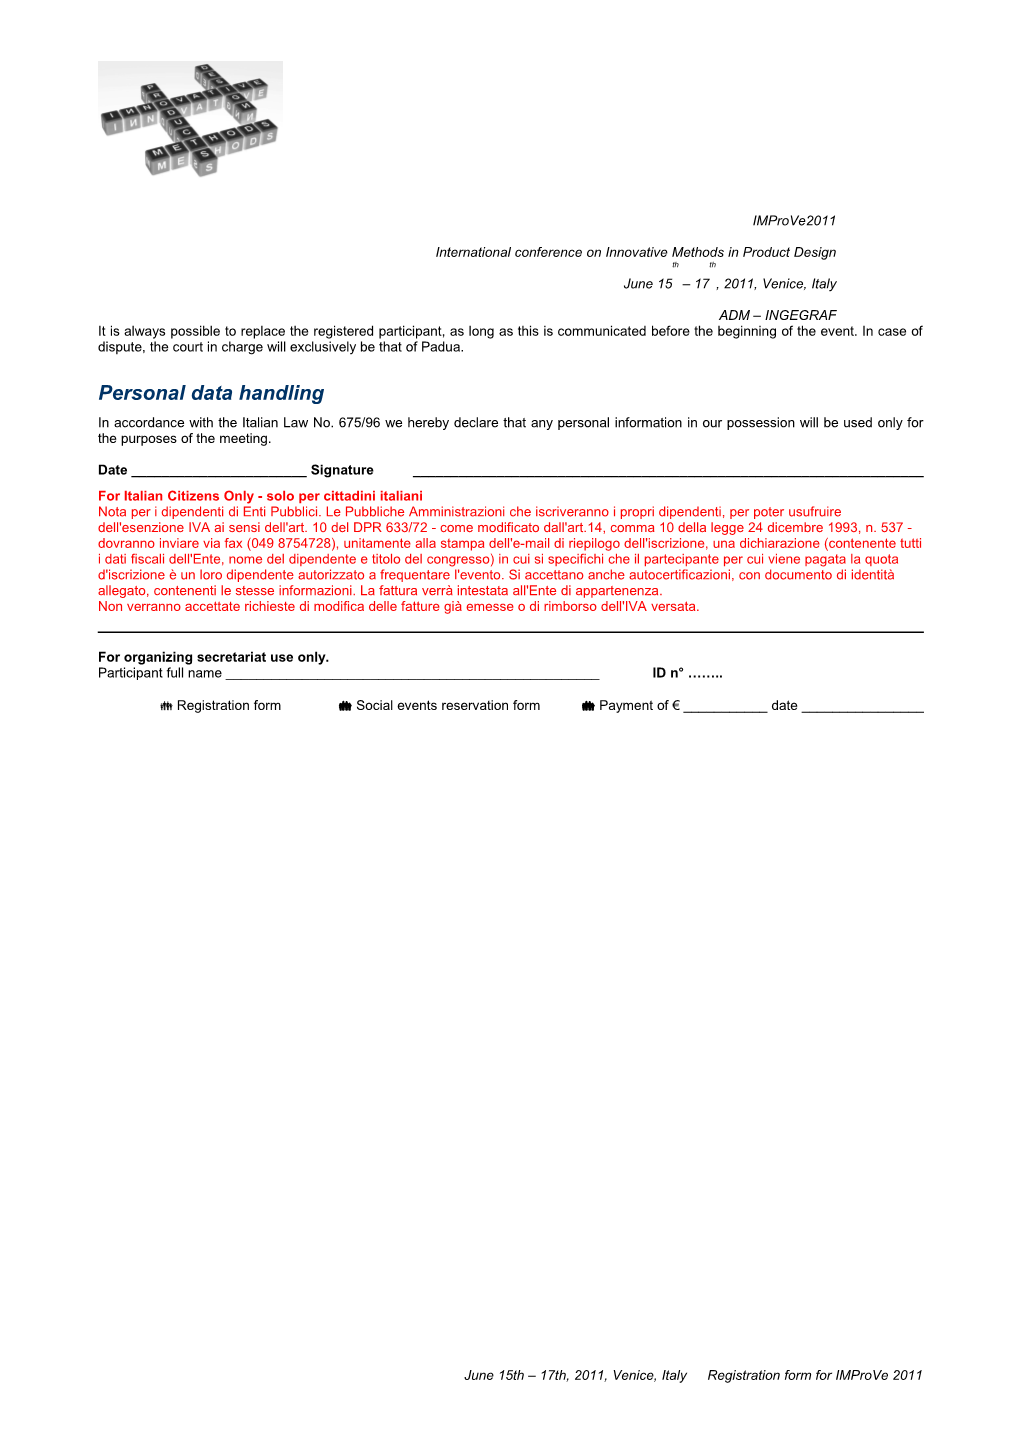 Registration Form for Improve 2011